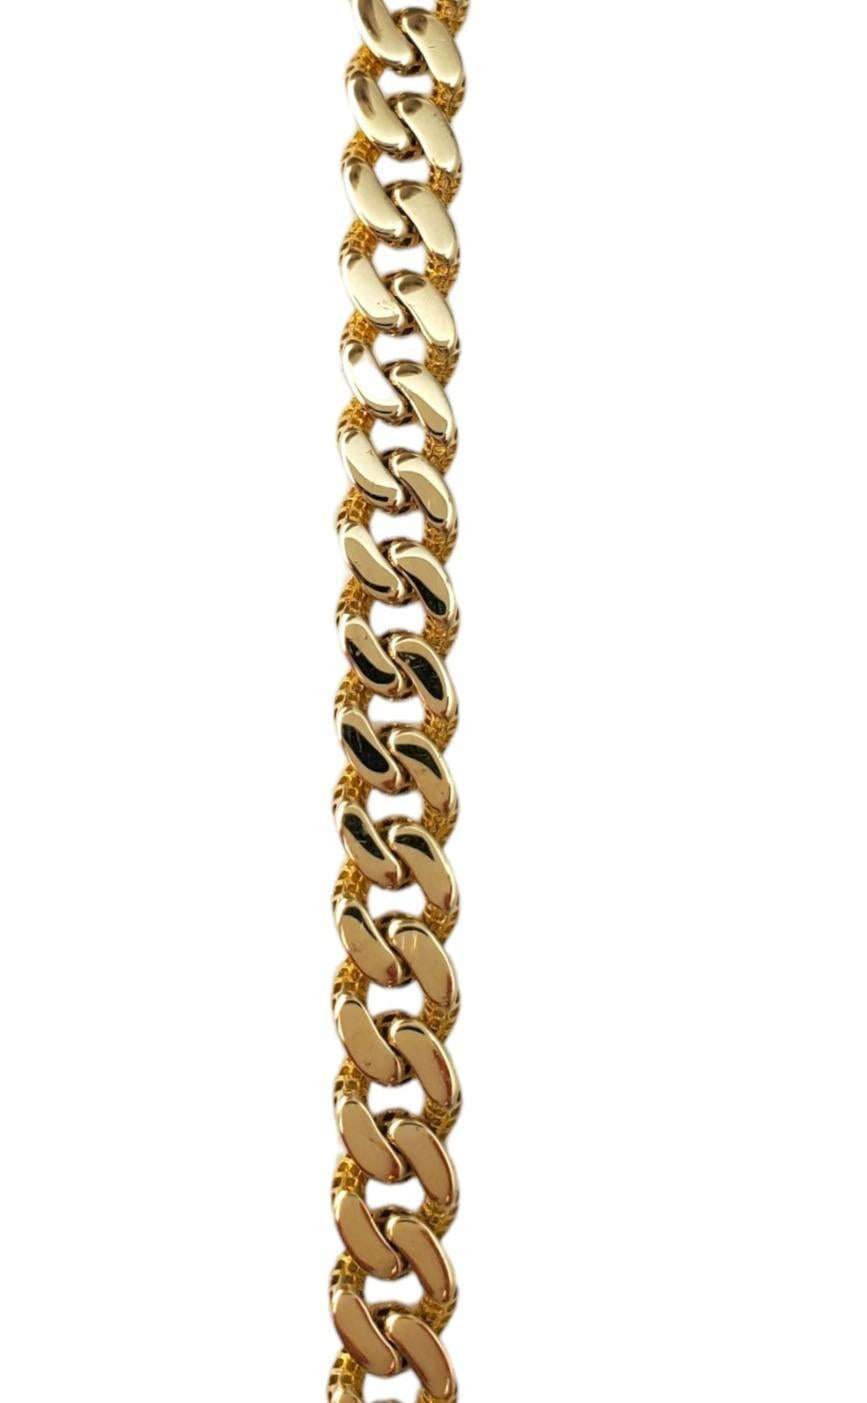 14K Gelbgold Curb Link Kettenarmband - 

Dieses Gliederkettenarmband ist ein klassisches Accessoire. 

Länge des Armbands: ca. 8 Zoll

Breite des Armbands: ca. 1/4